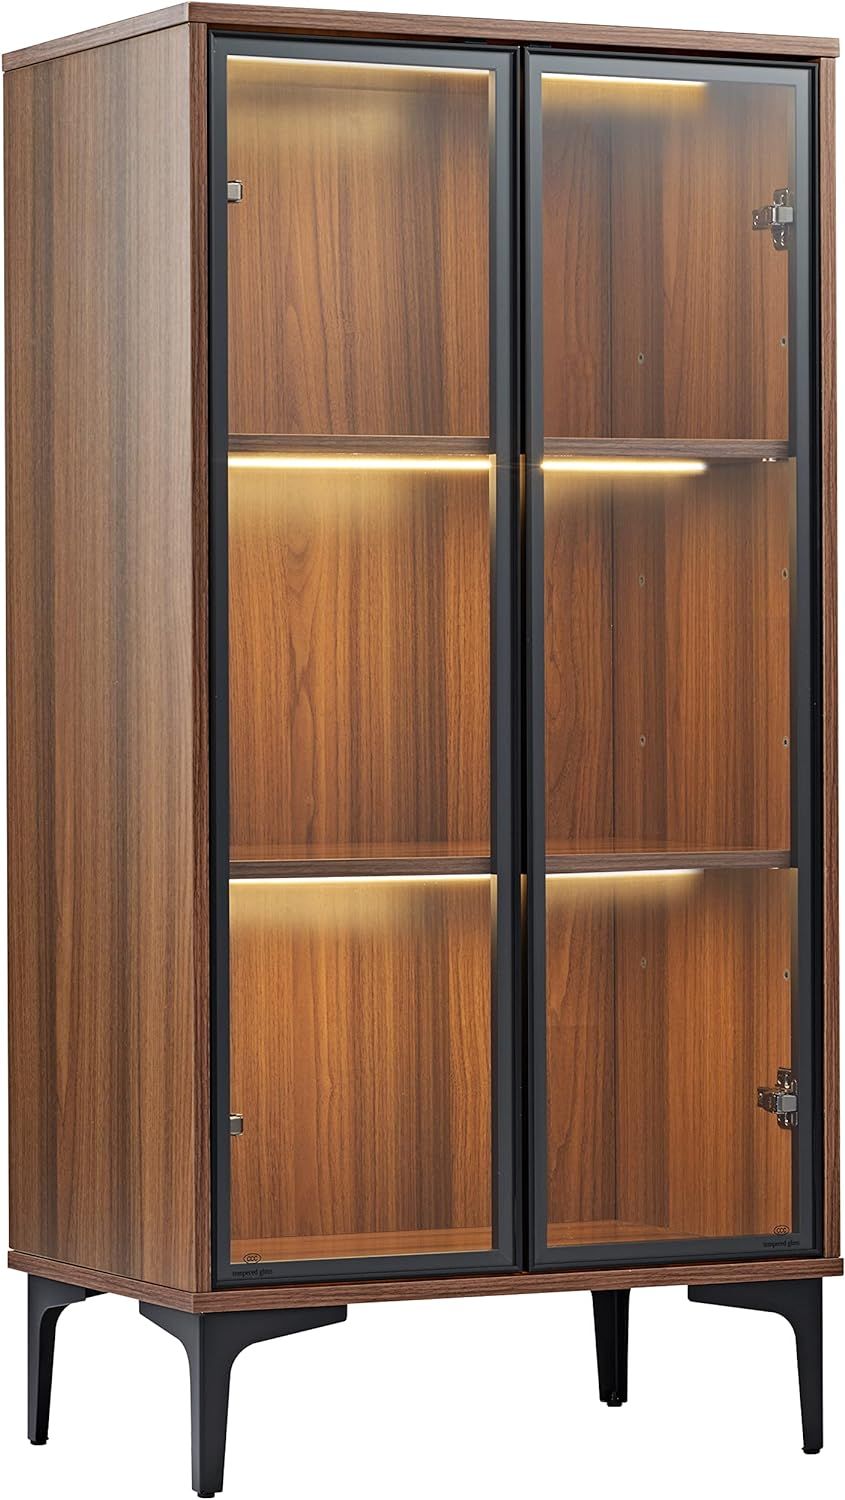 EUREKA ERGONOMIC Curio Cabinet, 2-Shelf Display Case Storage Showcase with LED Lighting, Tempered... | Amazon (US)